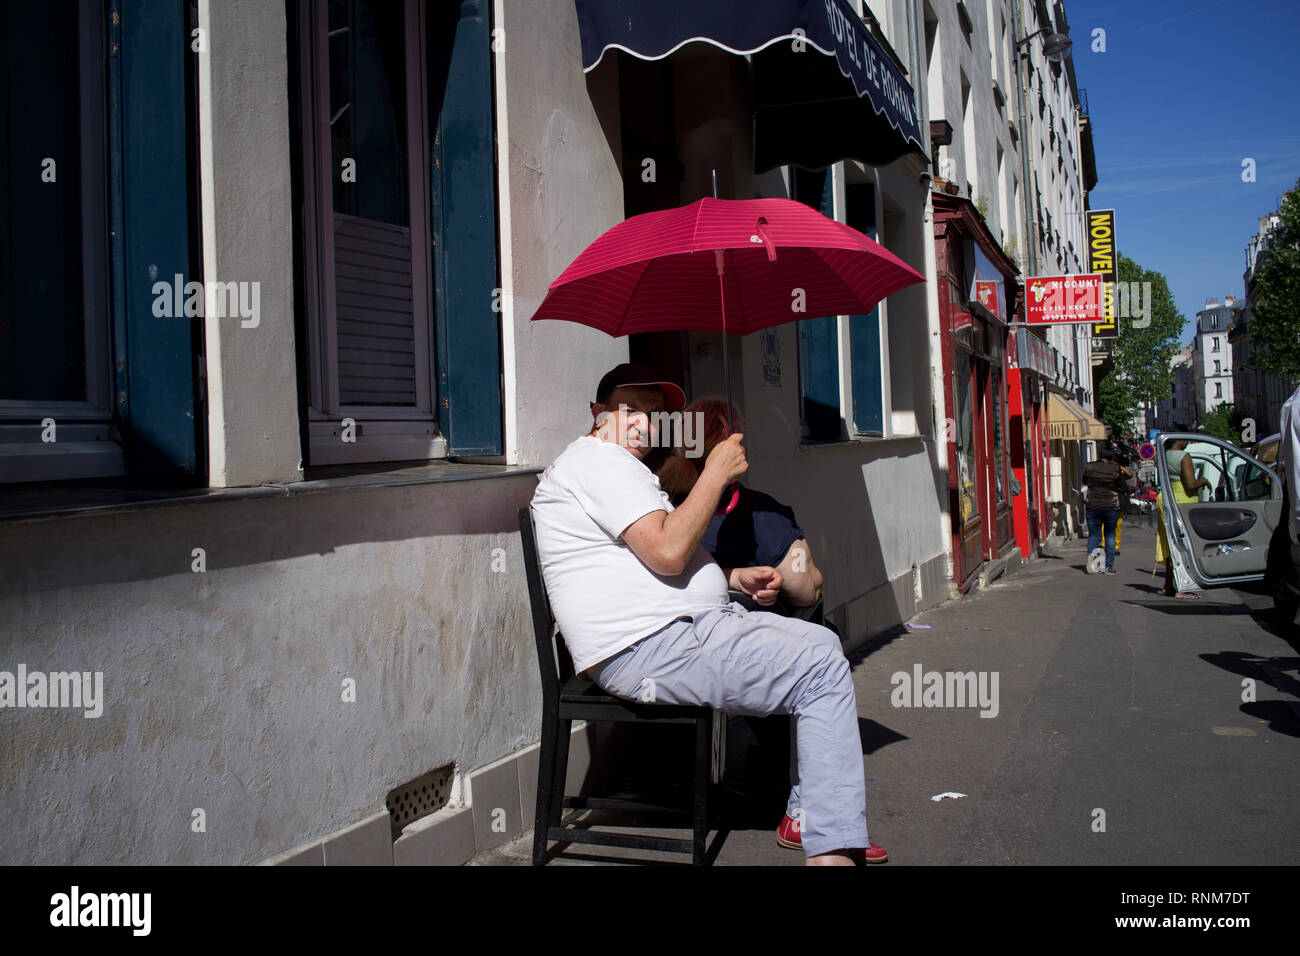 Man holding parapluie rouge, l'ombre du soleil lui-même, assis sur des chaises à l'extérieur de l'hôtel Rohan, Rue Myrha, 75018 Paris, France Banque D'Images